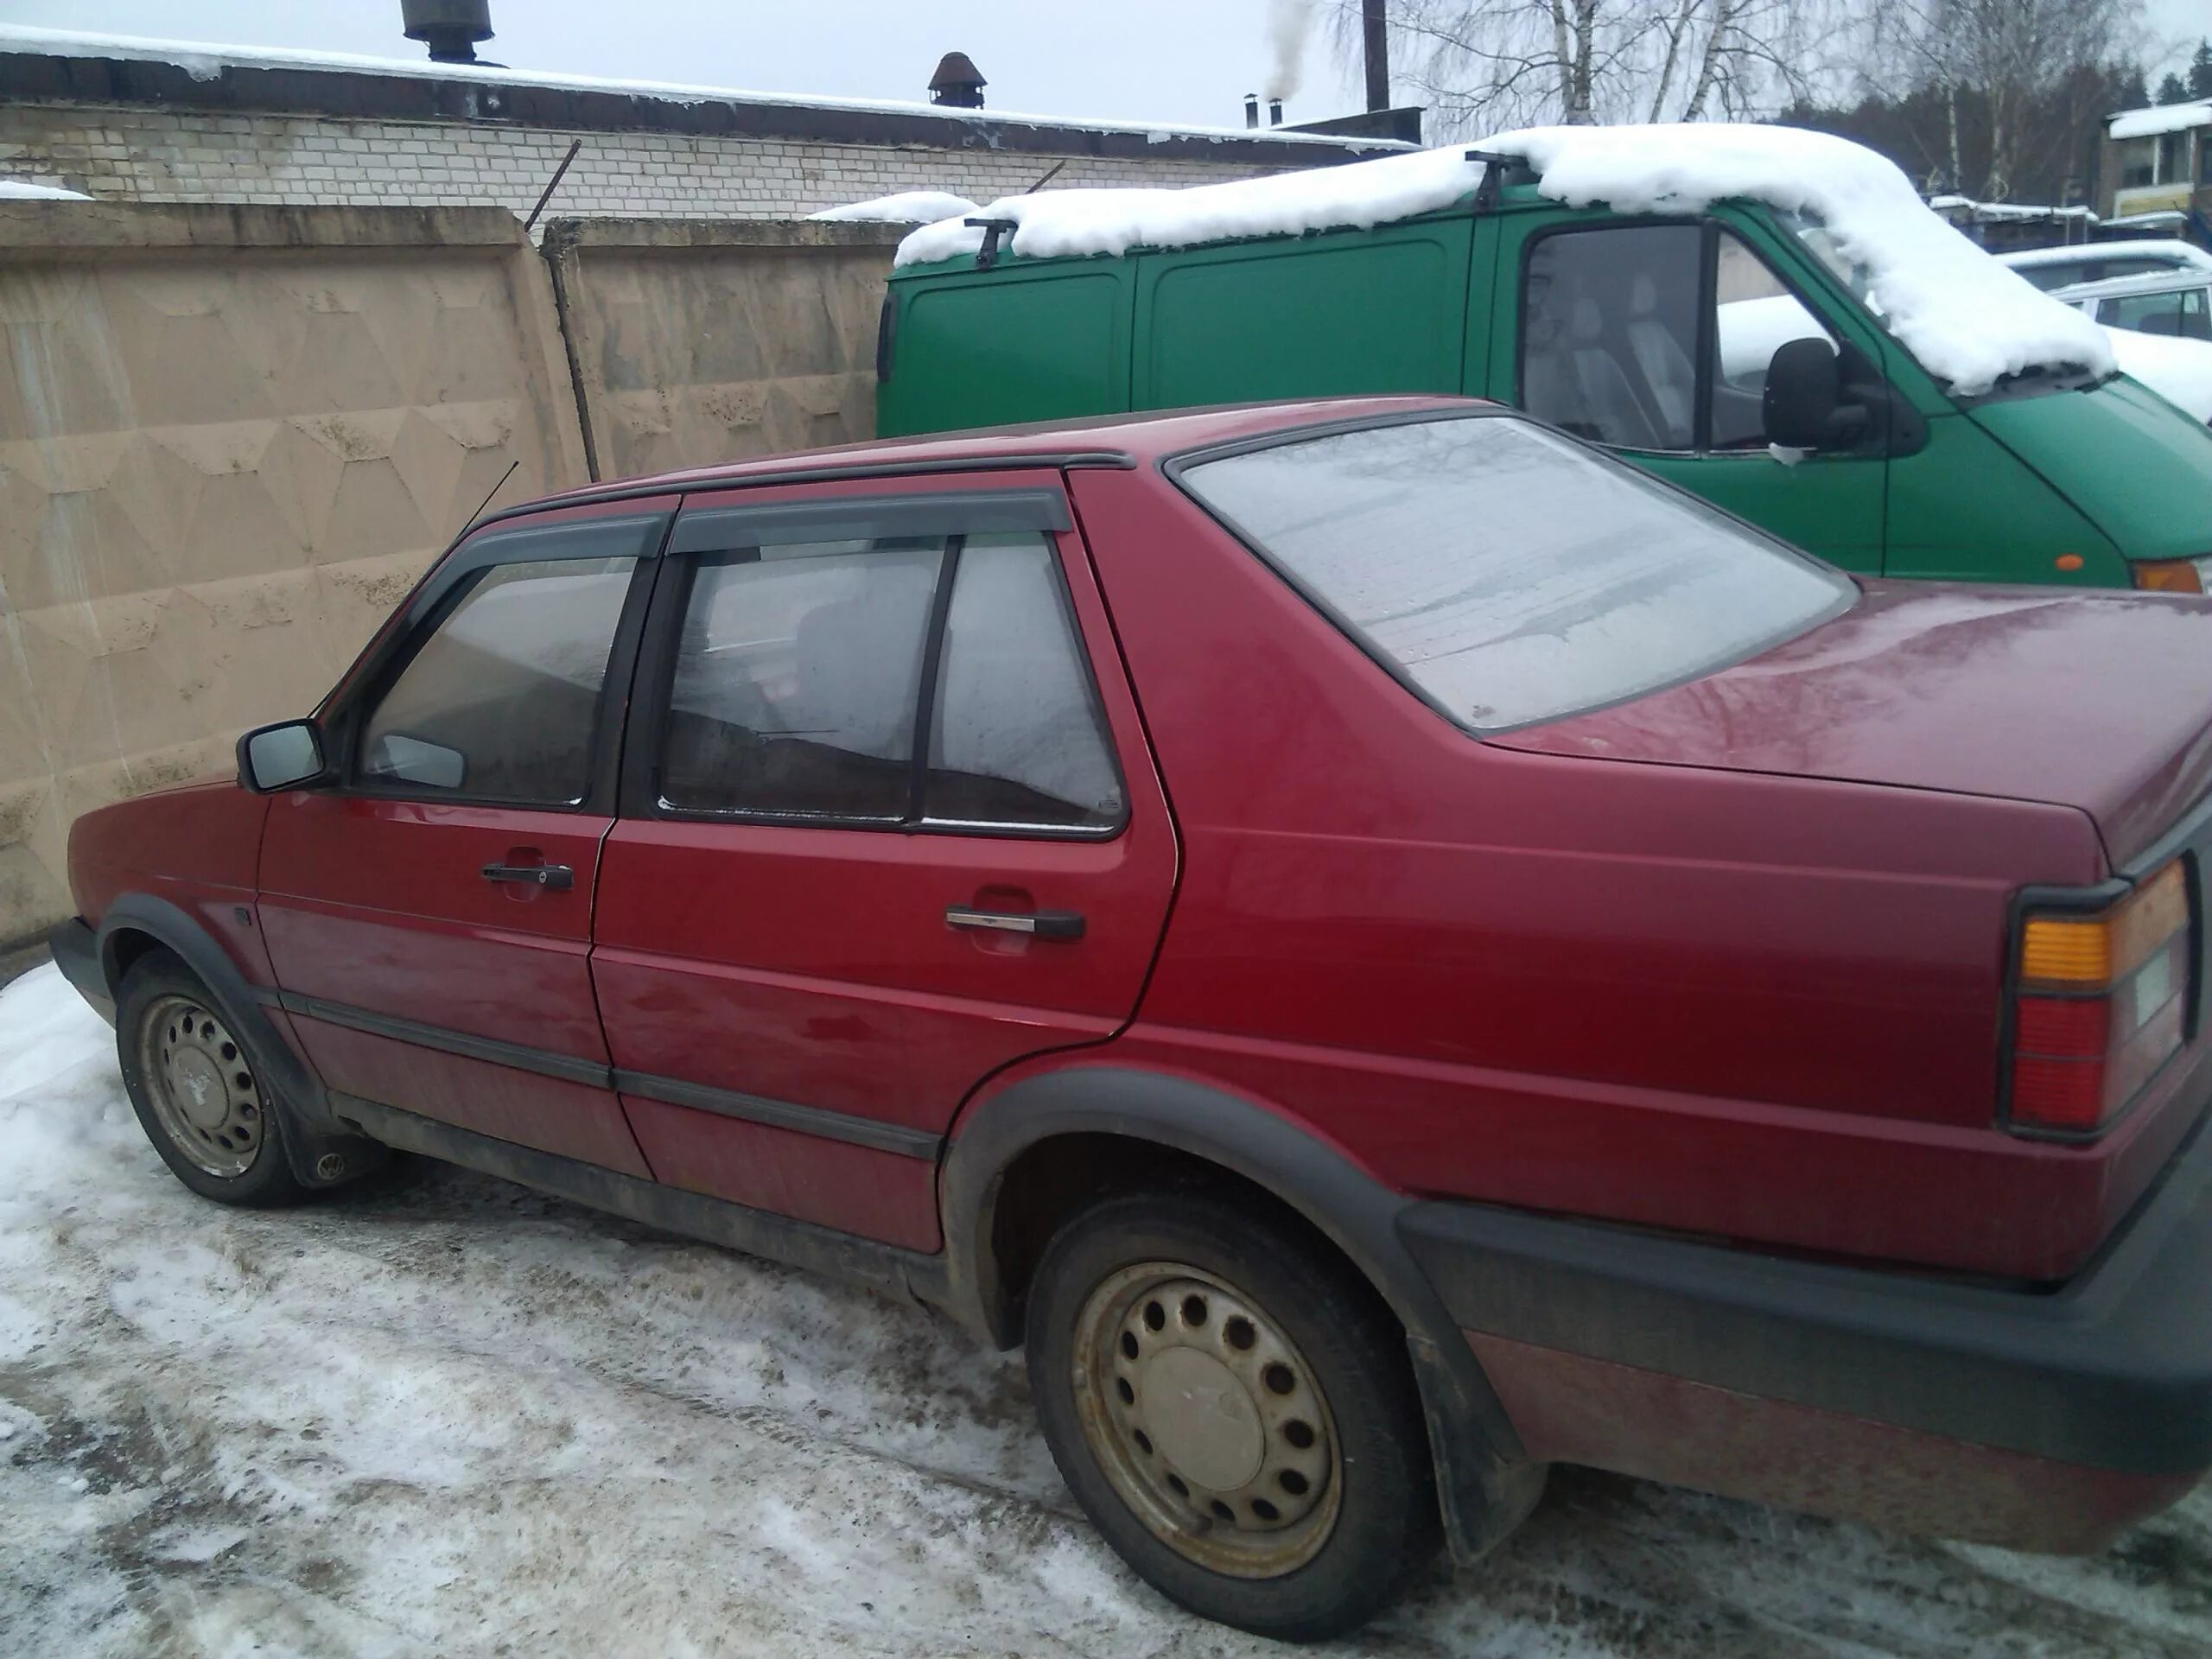 Куфар купить легковую автомобиль. Продажа авто в Витебской области. Купить авто в Полоцке и Новополоцке бу на Куфаре.